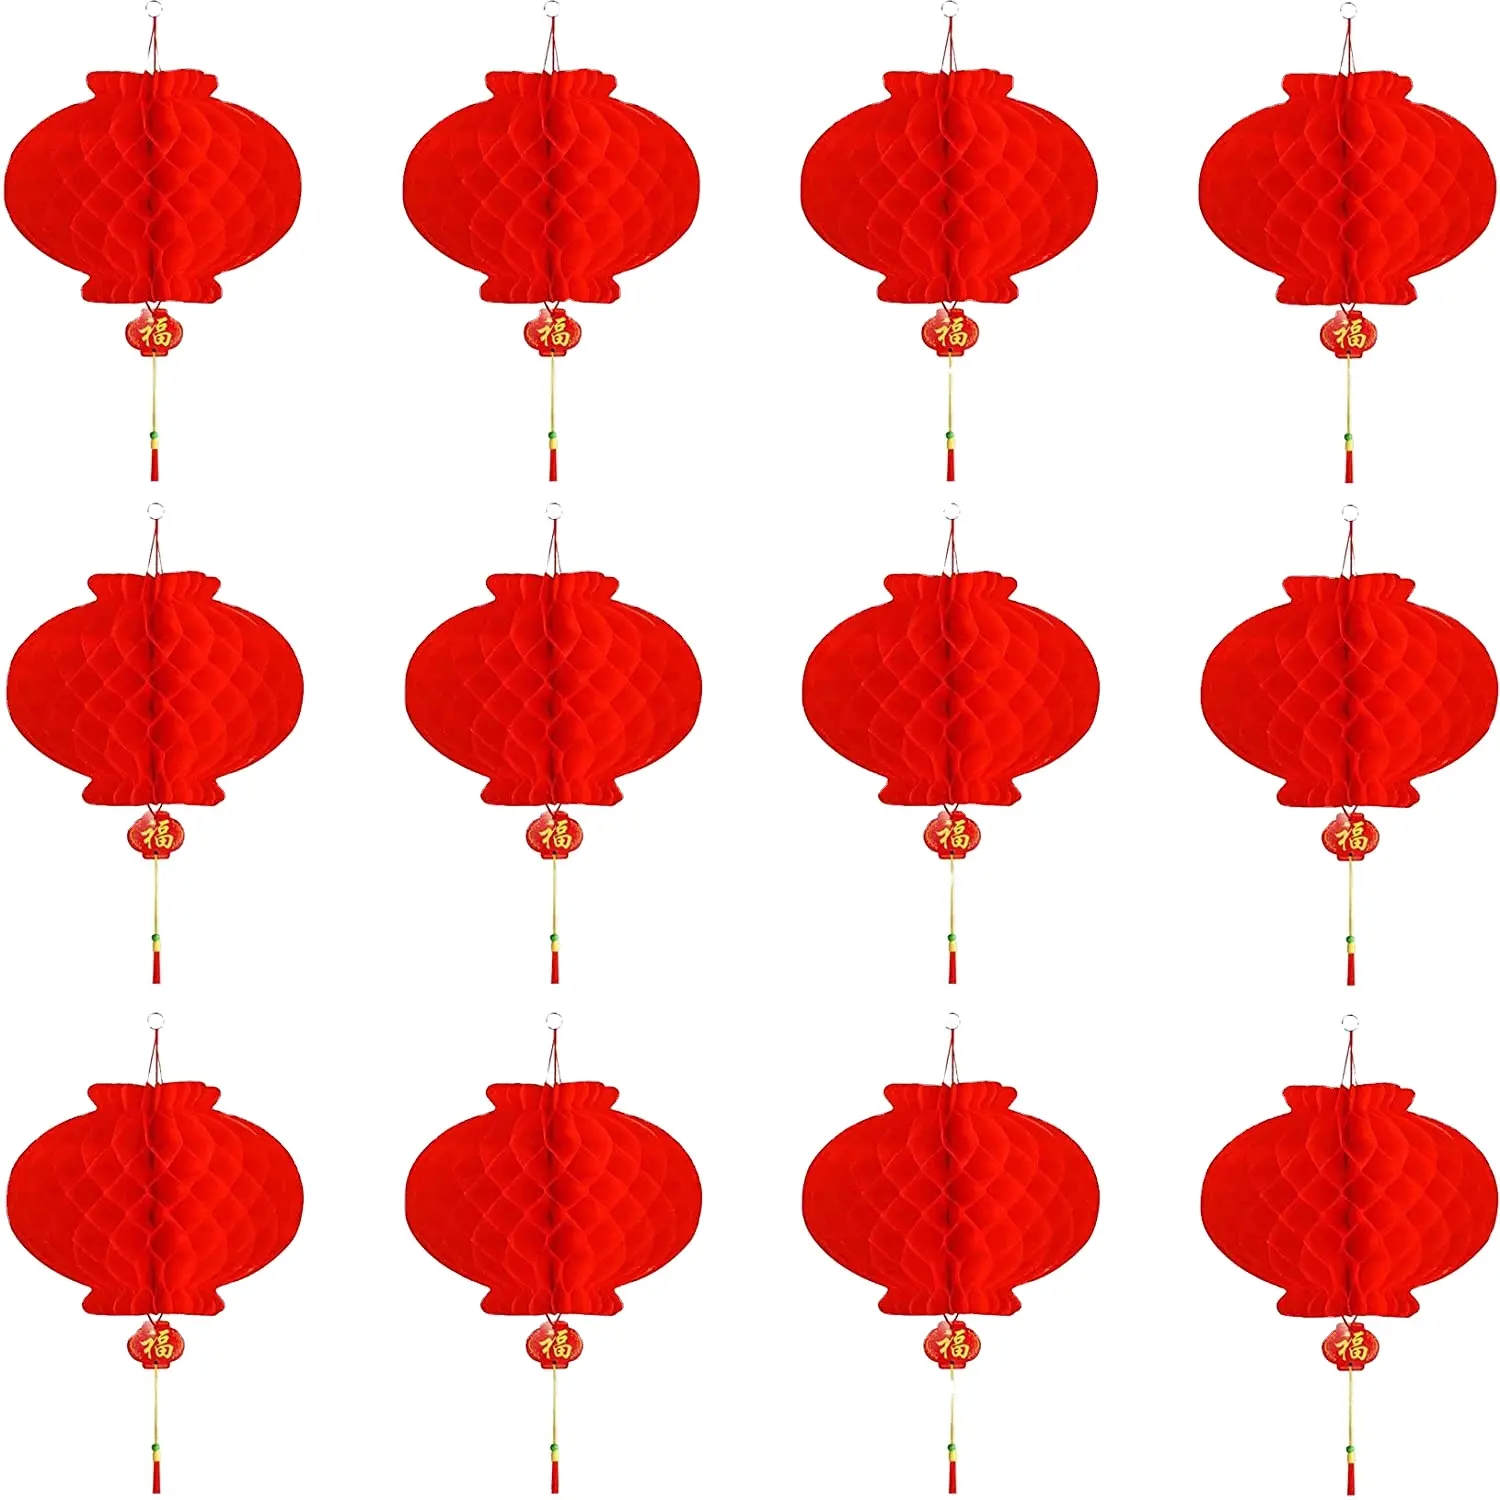 فوانيس ورقية حمراء-12 معلقة بزخرفة السنة الصينية الجديدة لمهرجان الربيع